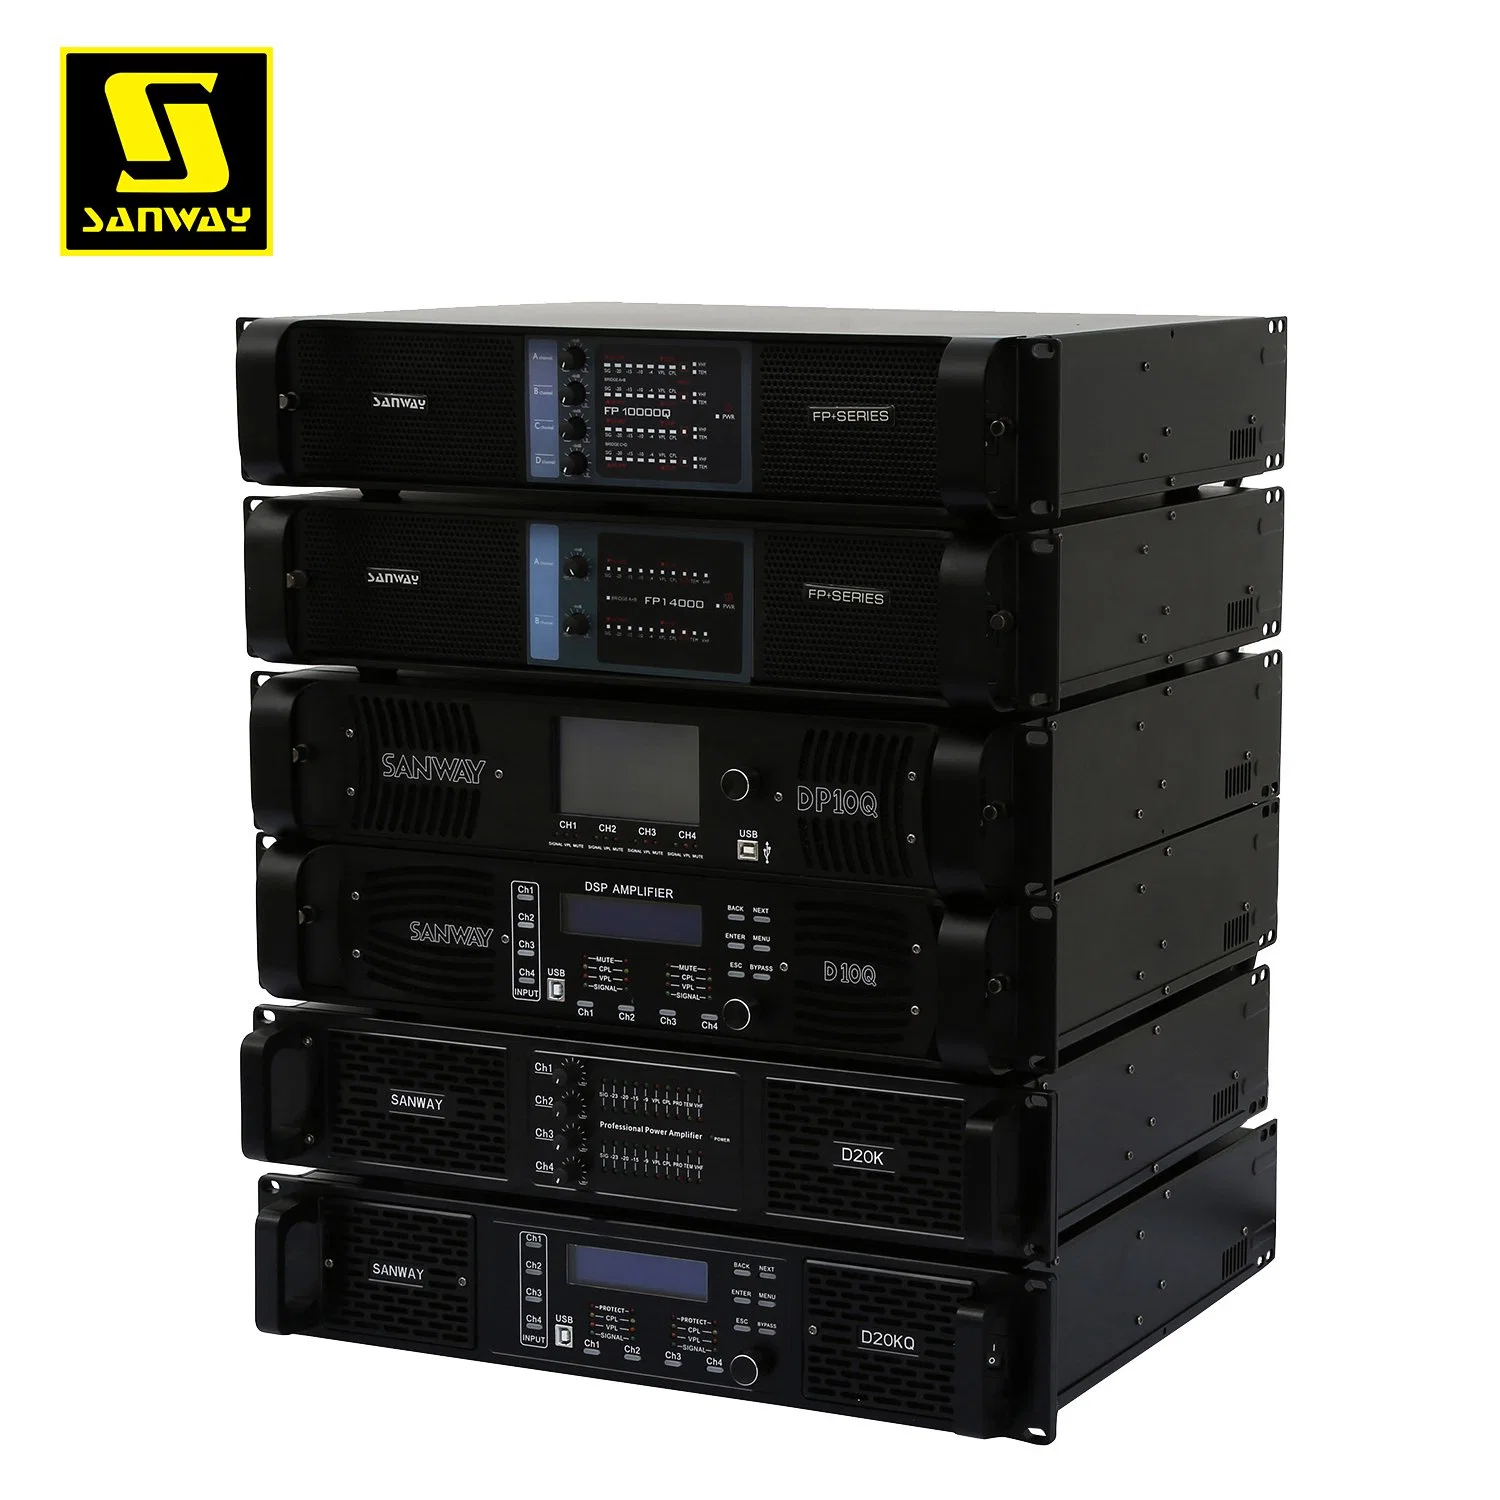 Sanway D20kq Fp20000q DSP Professional 16000W Class D Audio Power Verstärker DJ Audio High Power Verstärker für Subwoofer